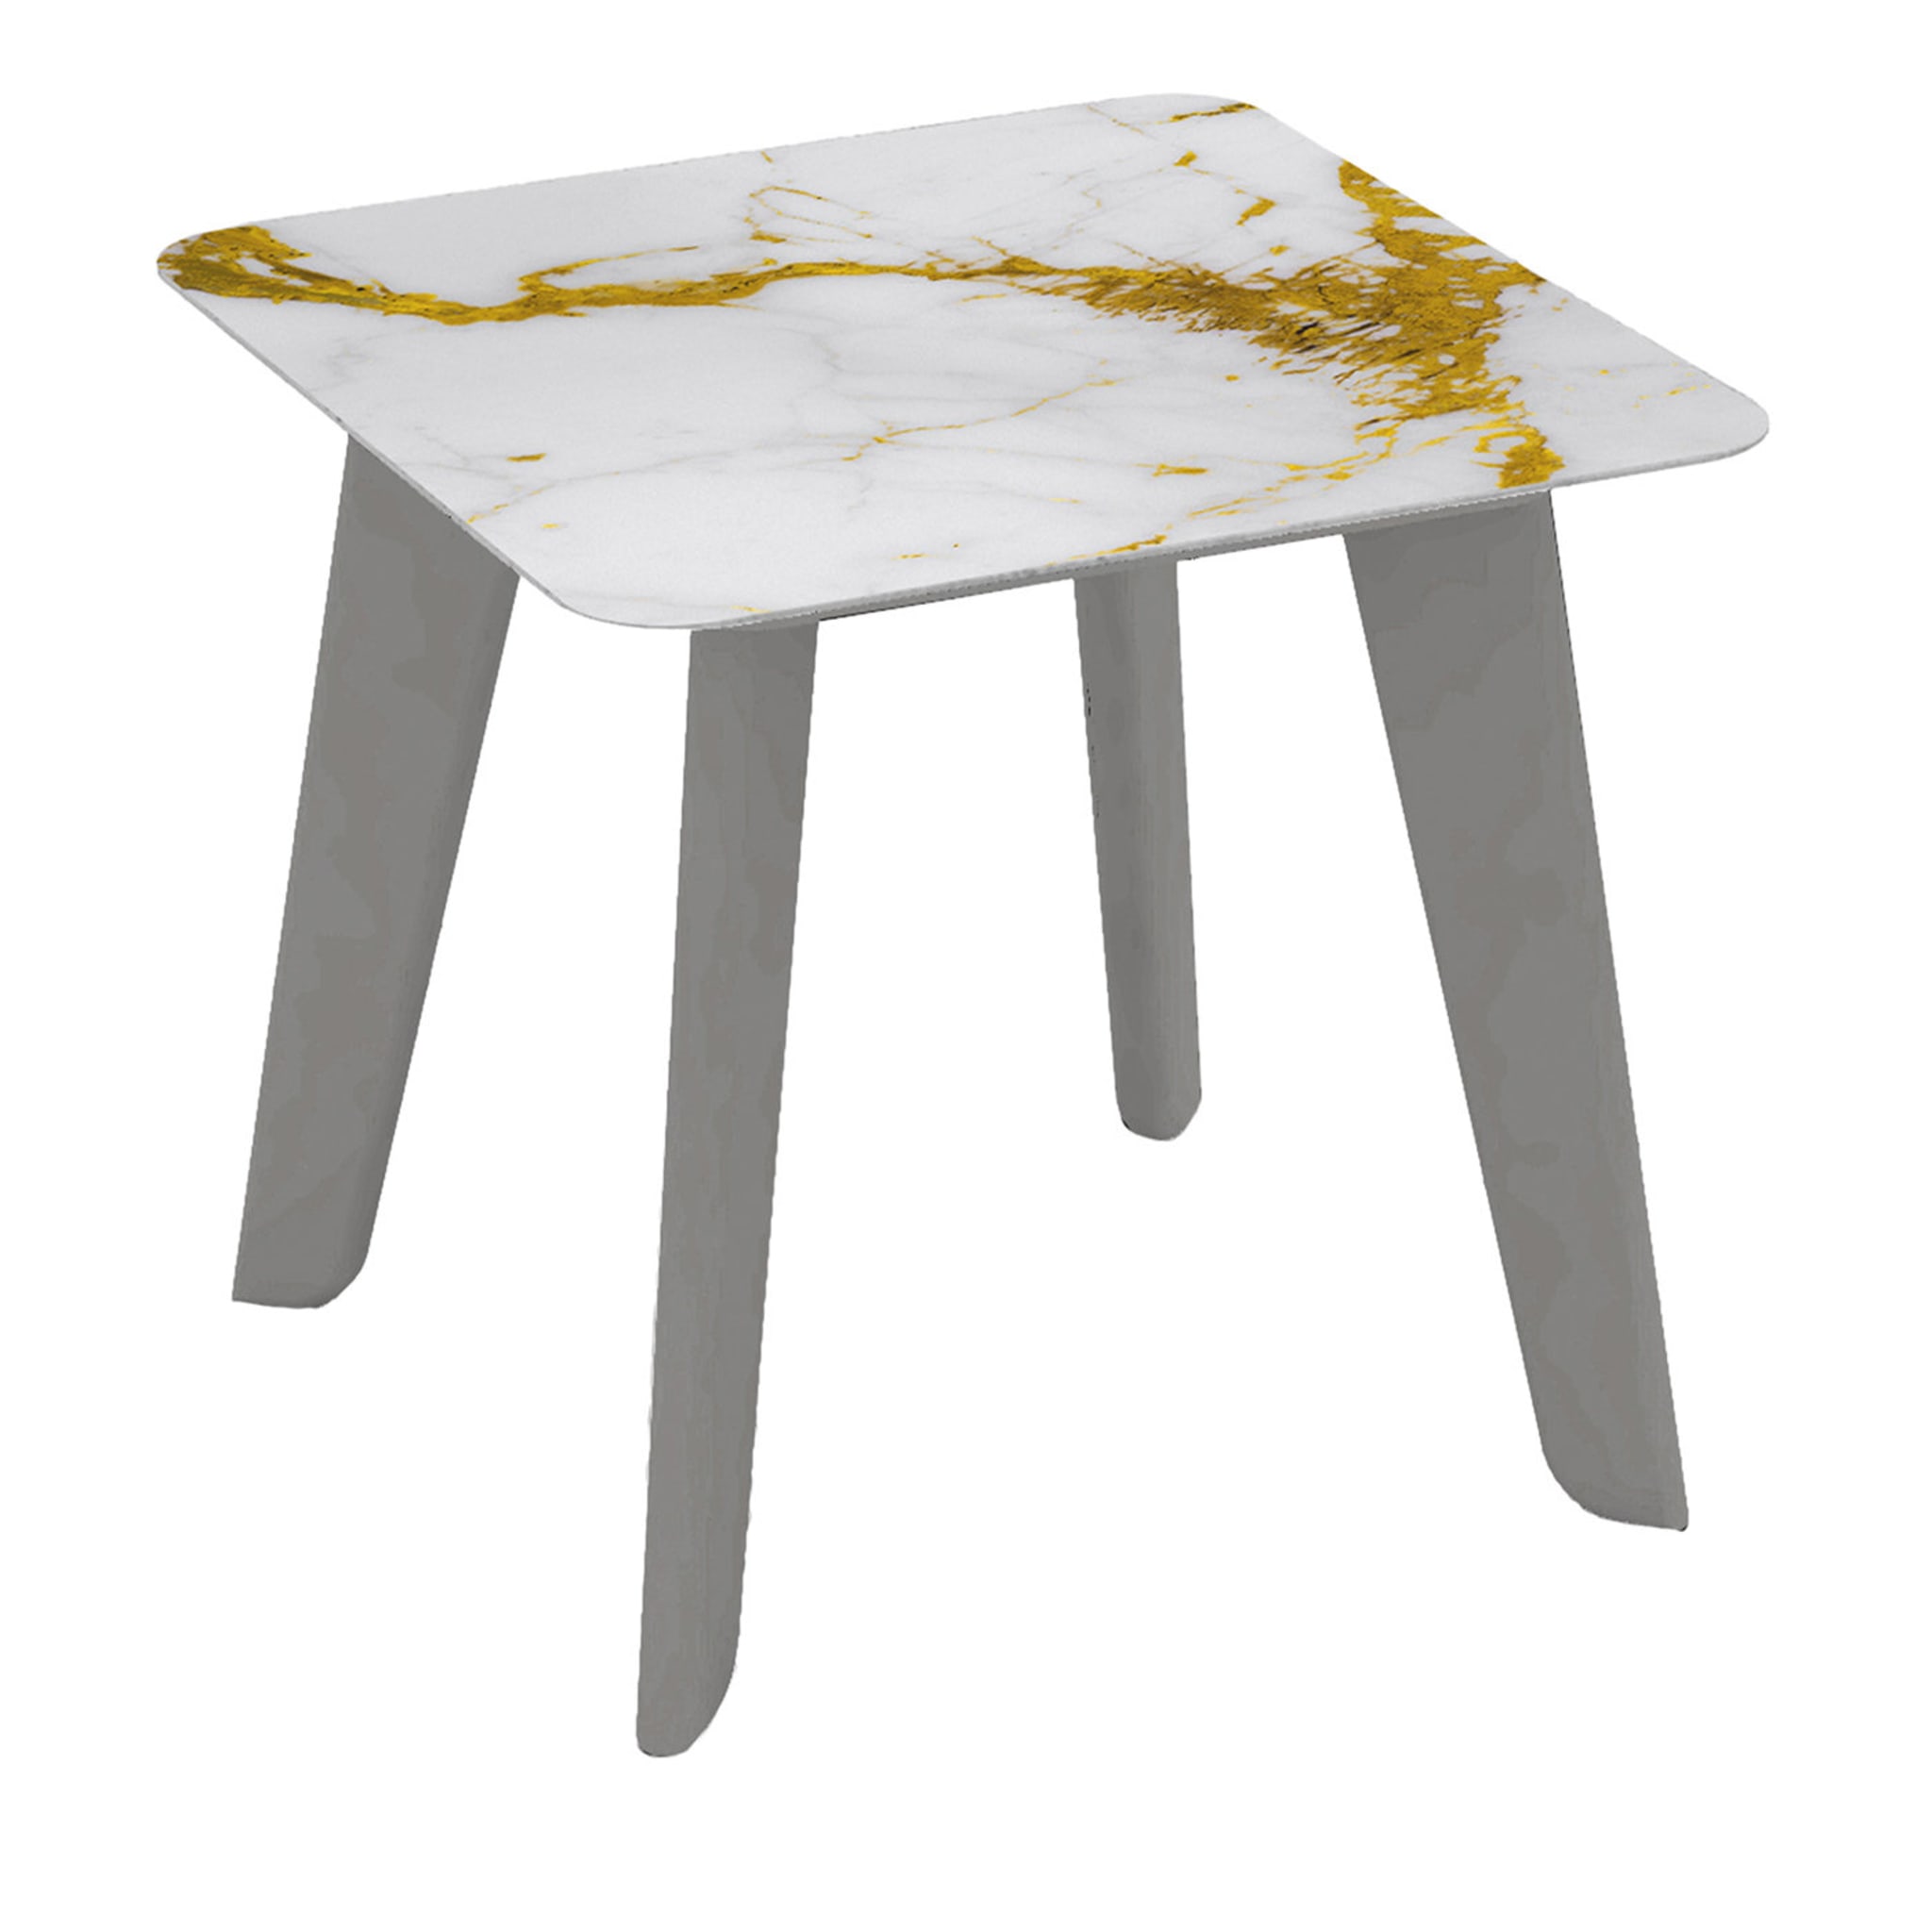 Owen Low Square Side Table with Gold and White Top (Table d'appoint carrée basse avec plateau doré et blanc) - Vue principale